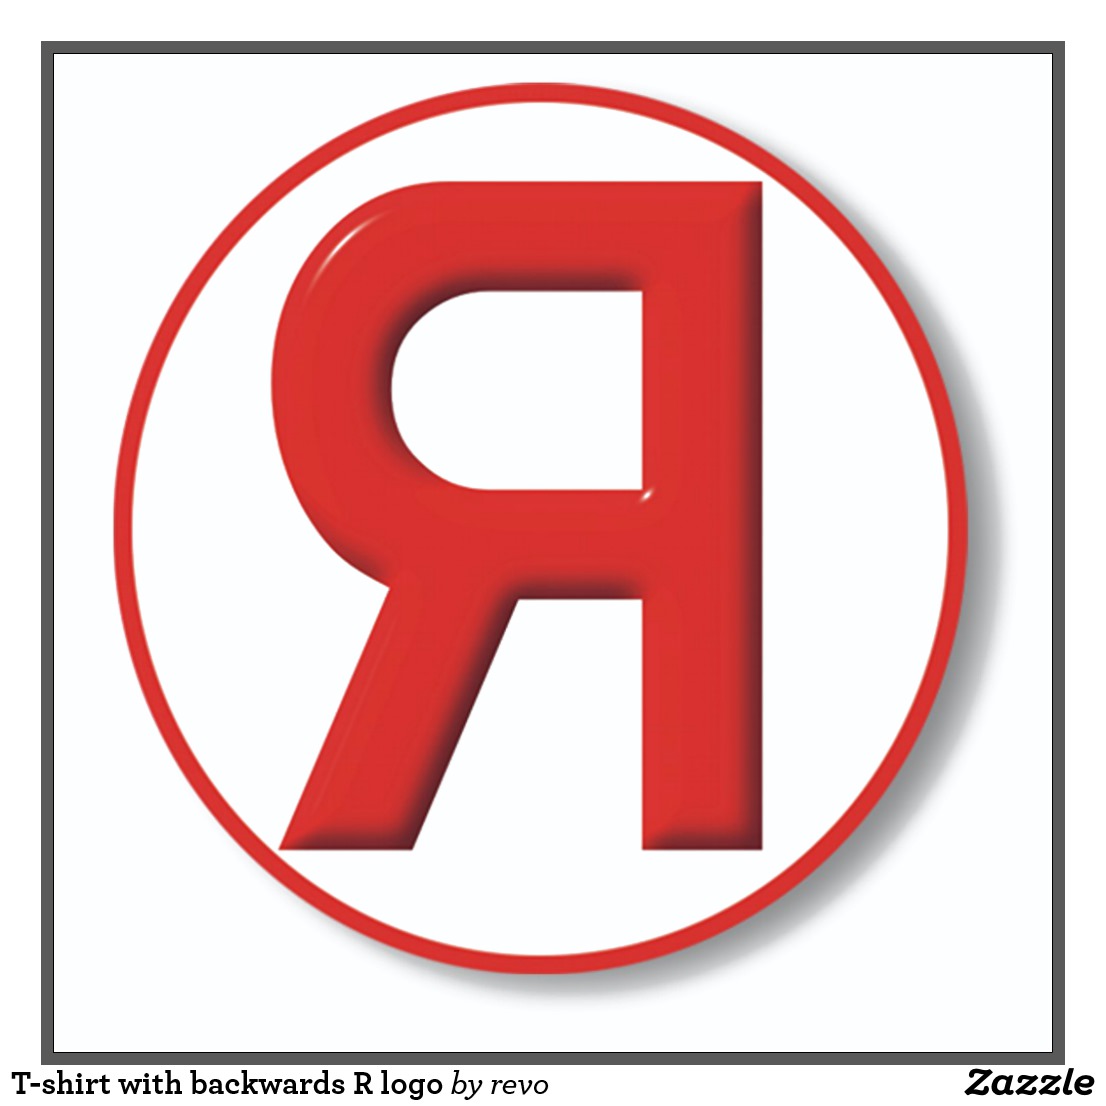 C and backwards c logo